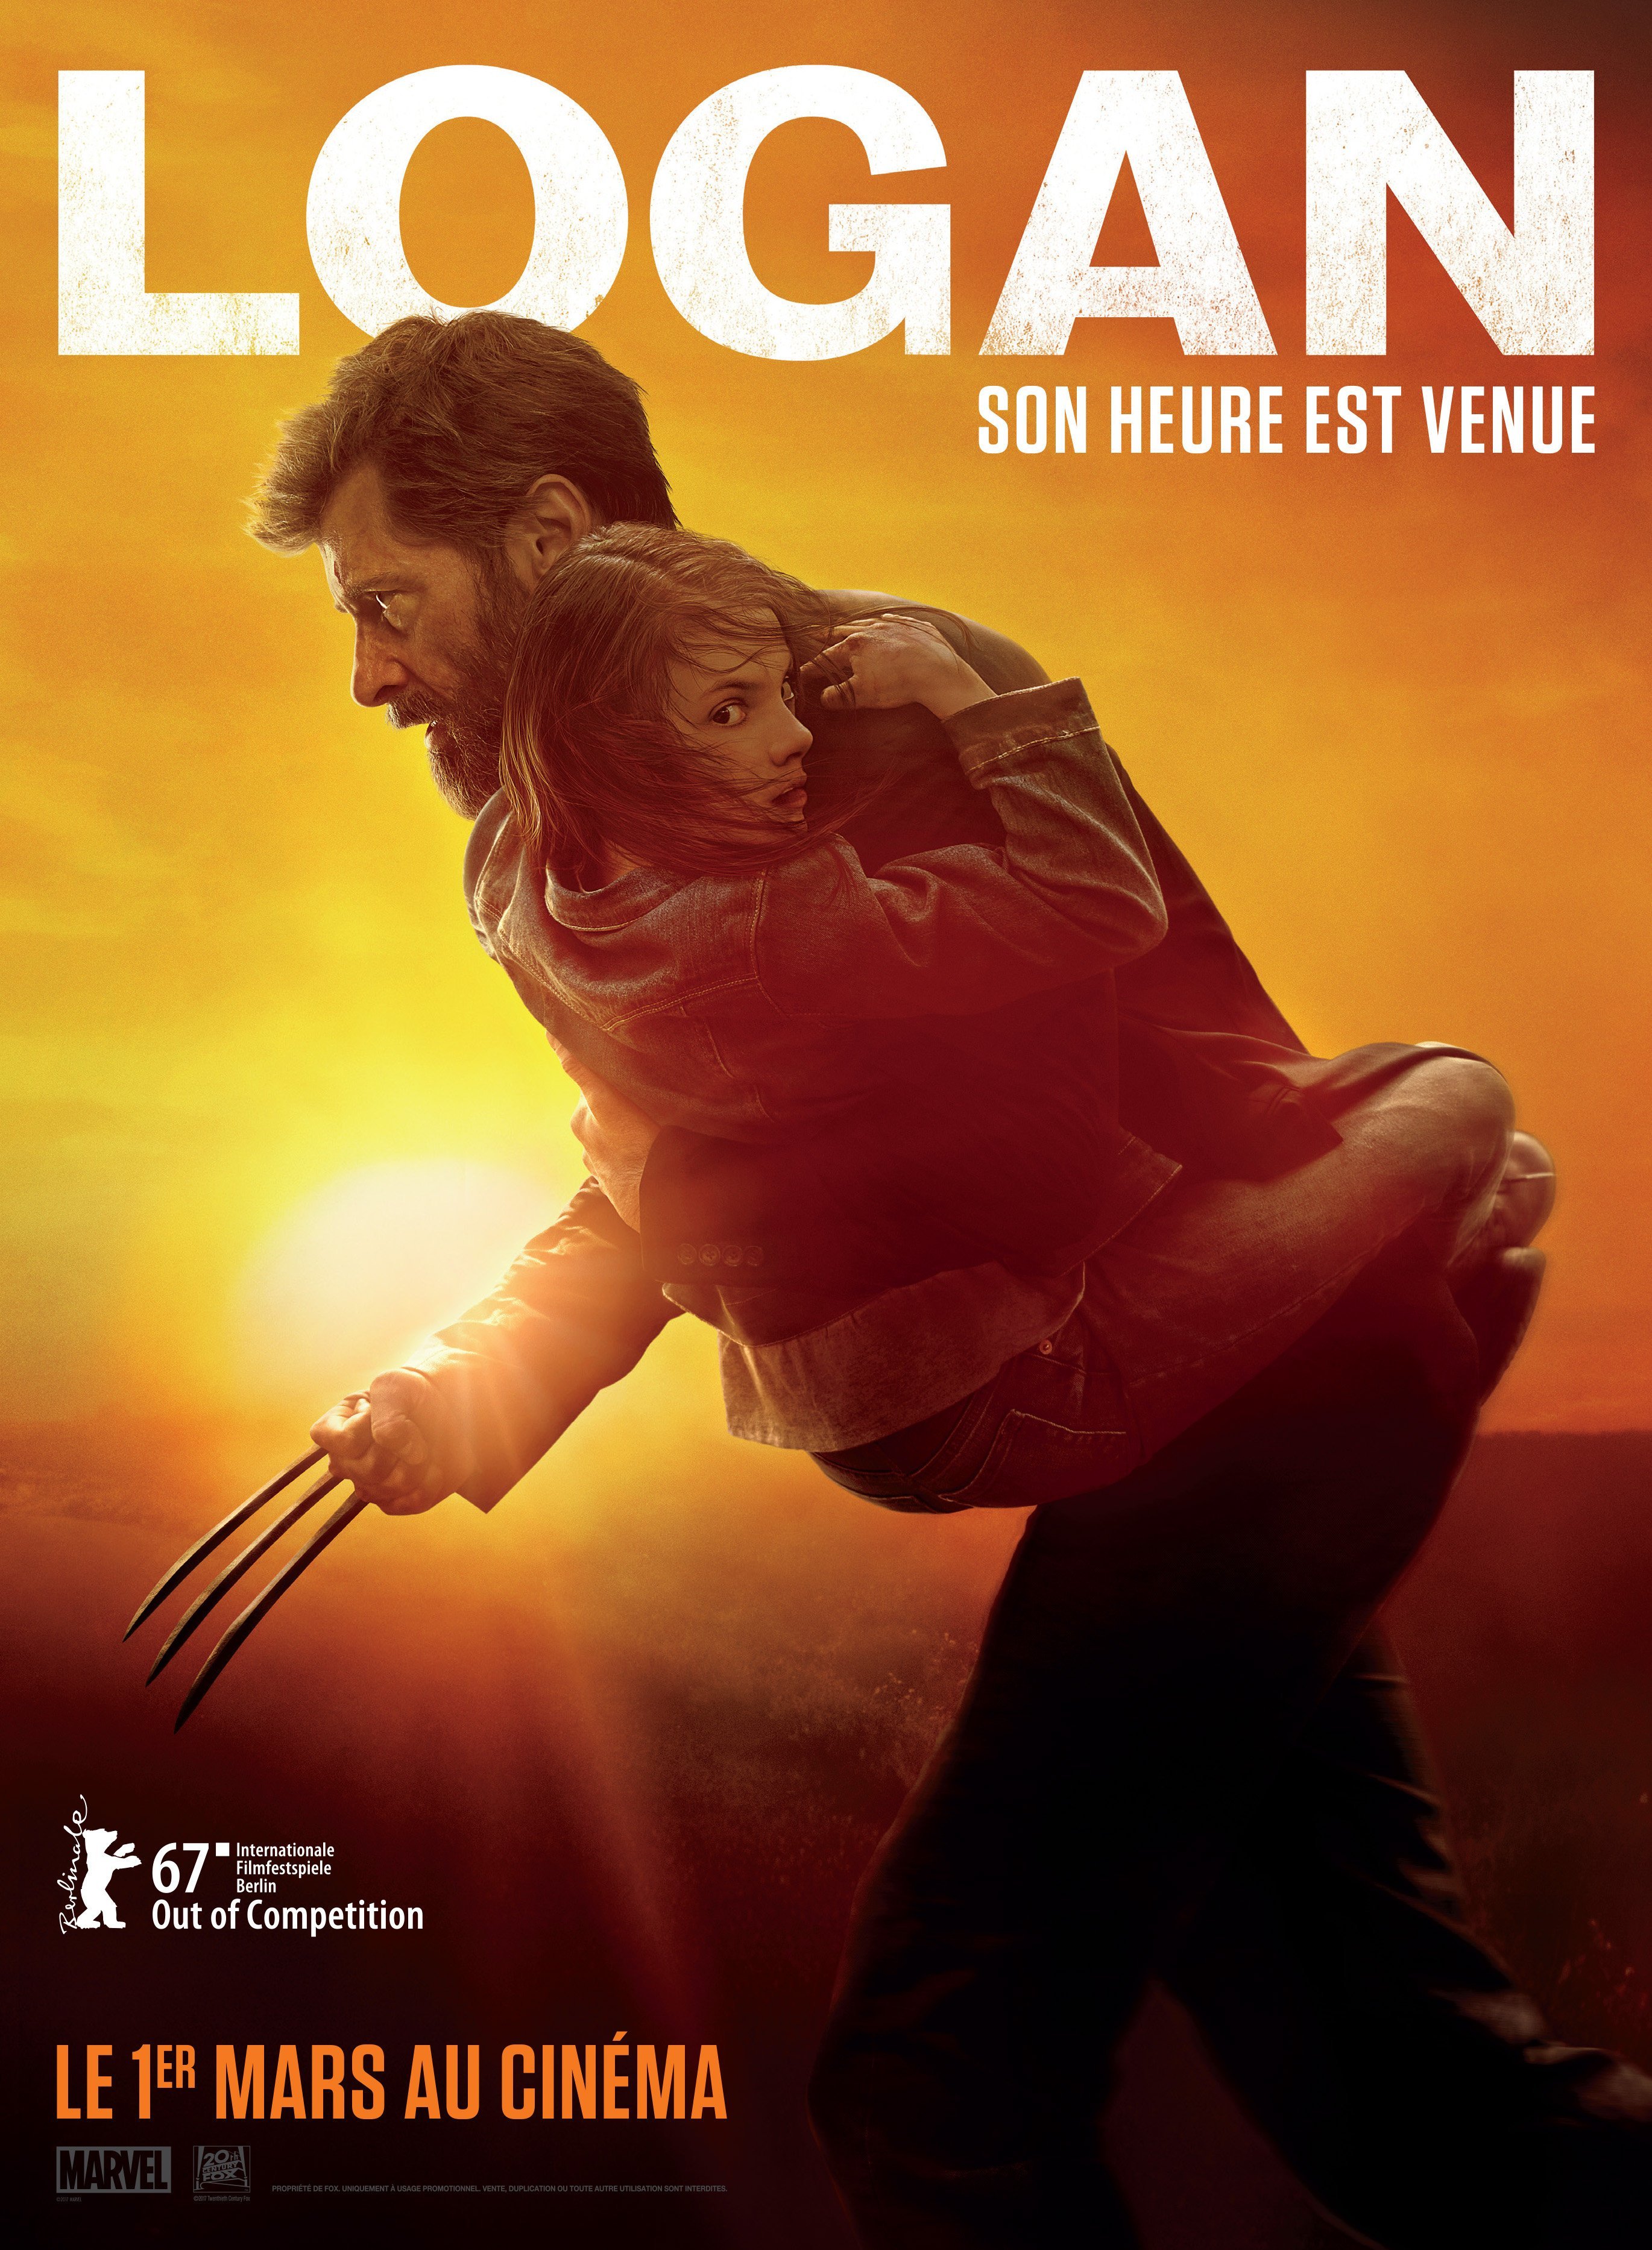 Affiche française du film Logan avec la tagline "Son heure est venue"